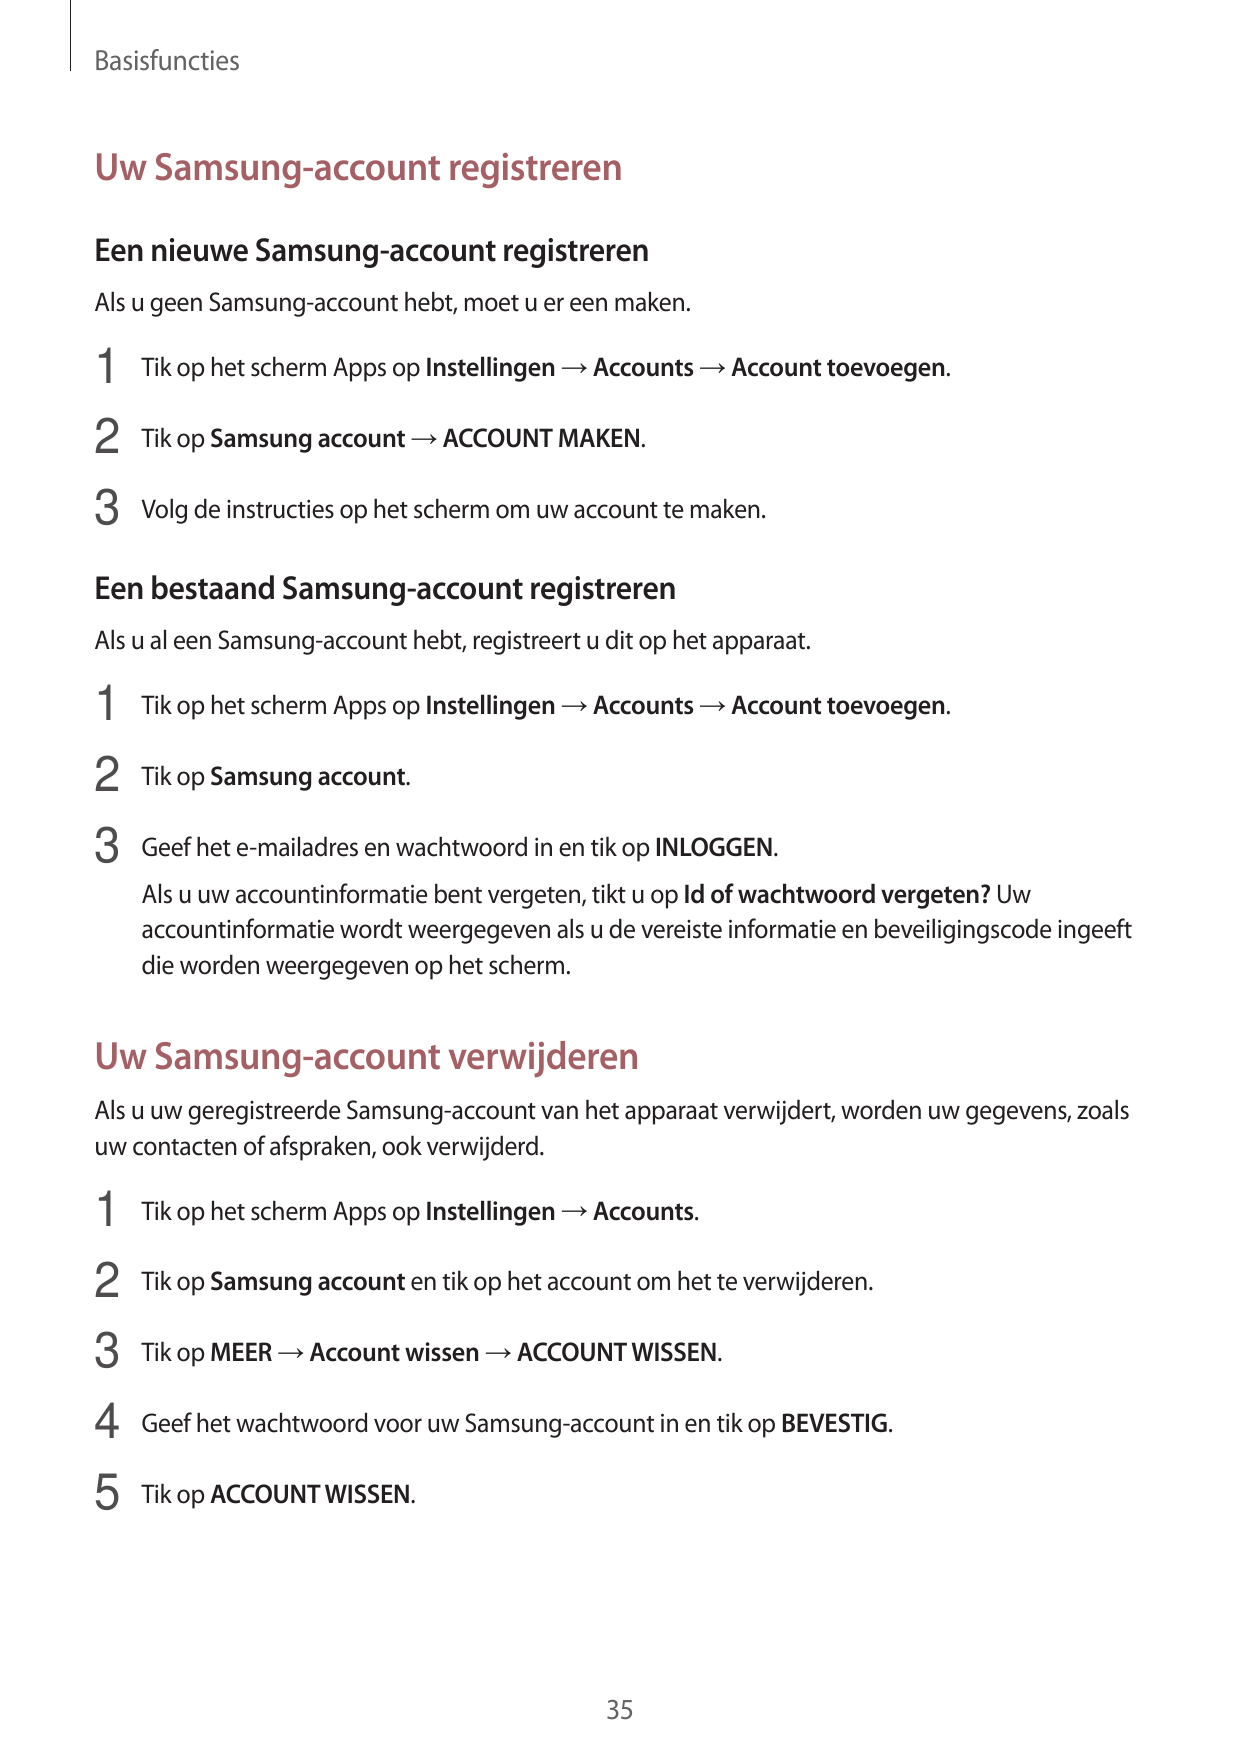 BasisfunctiesUw Samsung-account registrerenEen nieuwe Samsung-account registrerenAls u geen Samsung-account hebt, moet u er een 